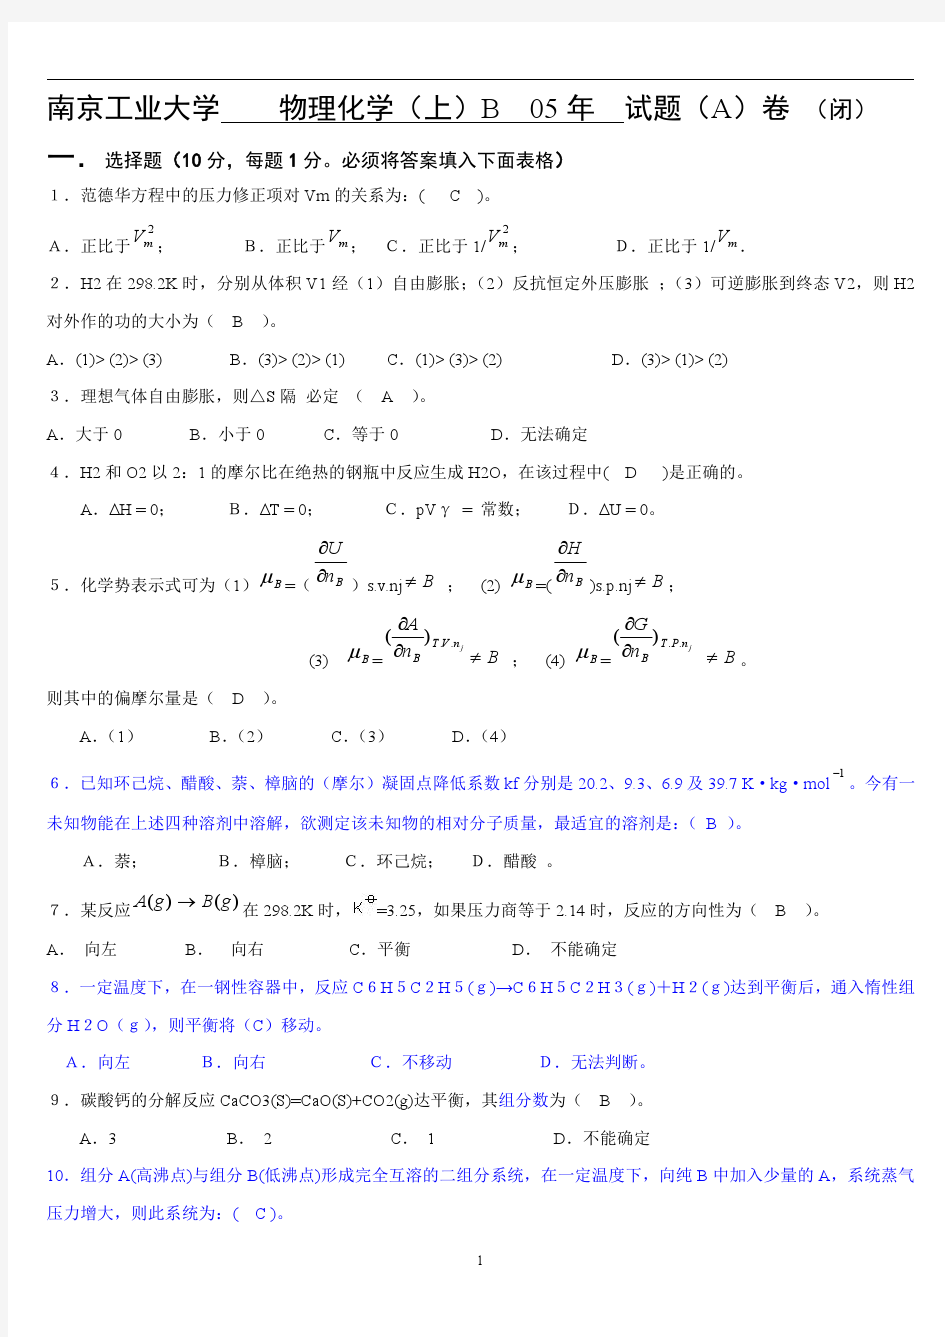 南京工业大学____物理化学(上)期末考试__试题(A)卷_(闭)